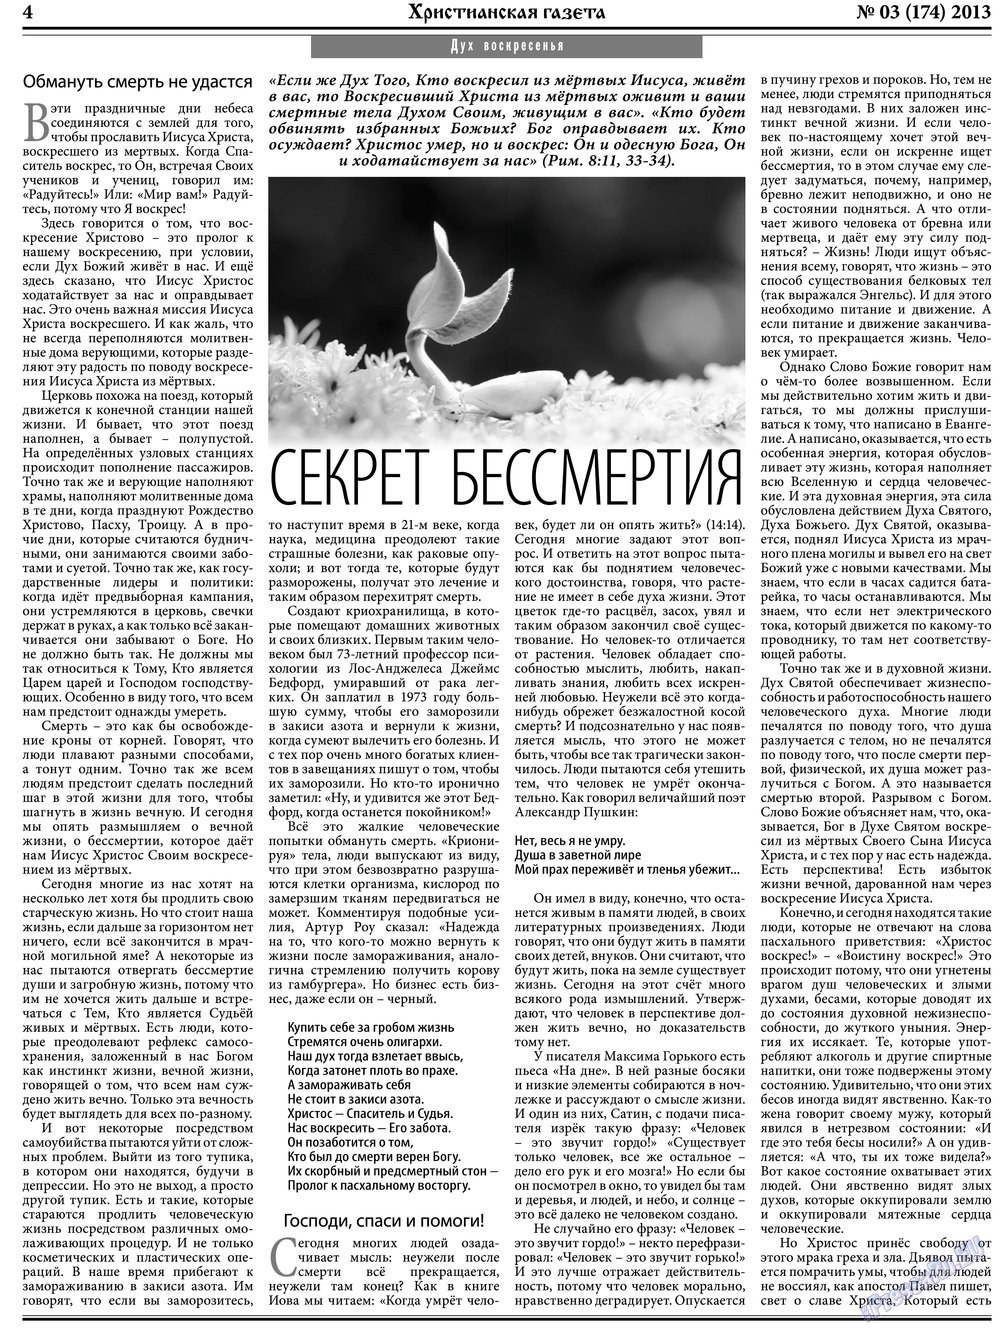 Христианская газета, газета. 2013 №3 стр.4